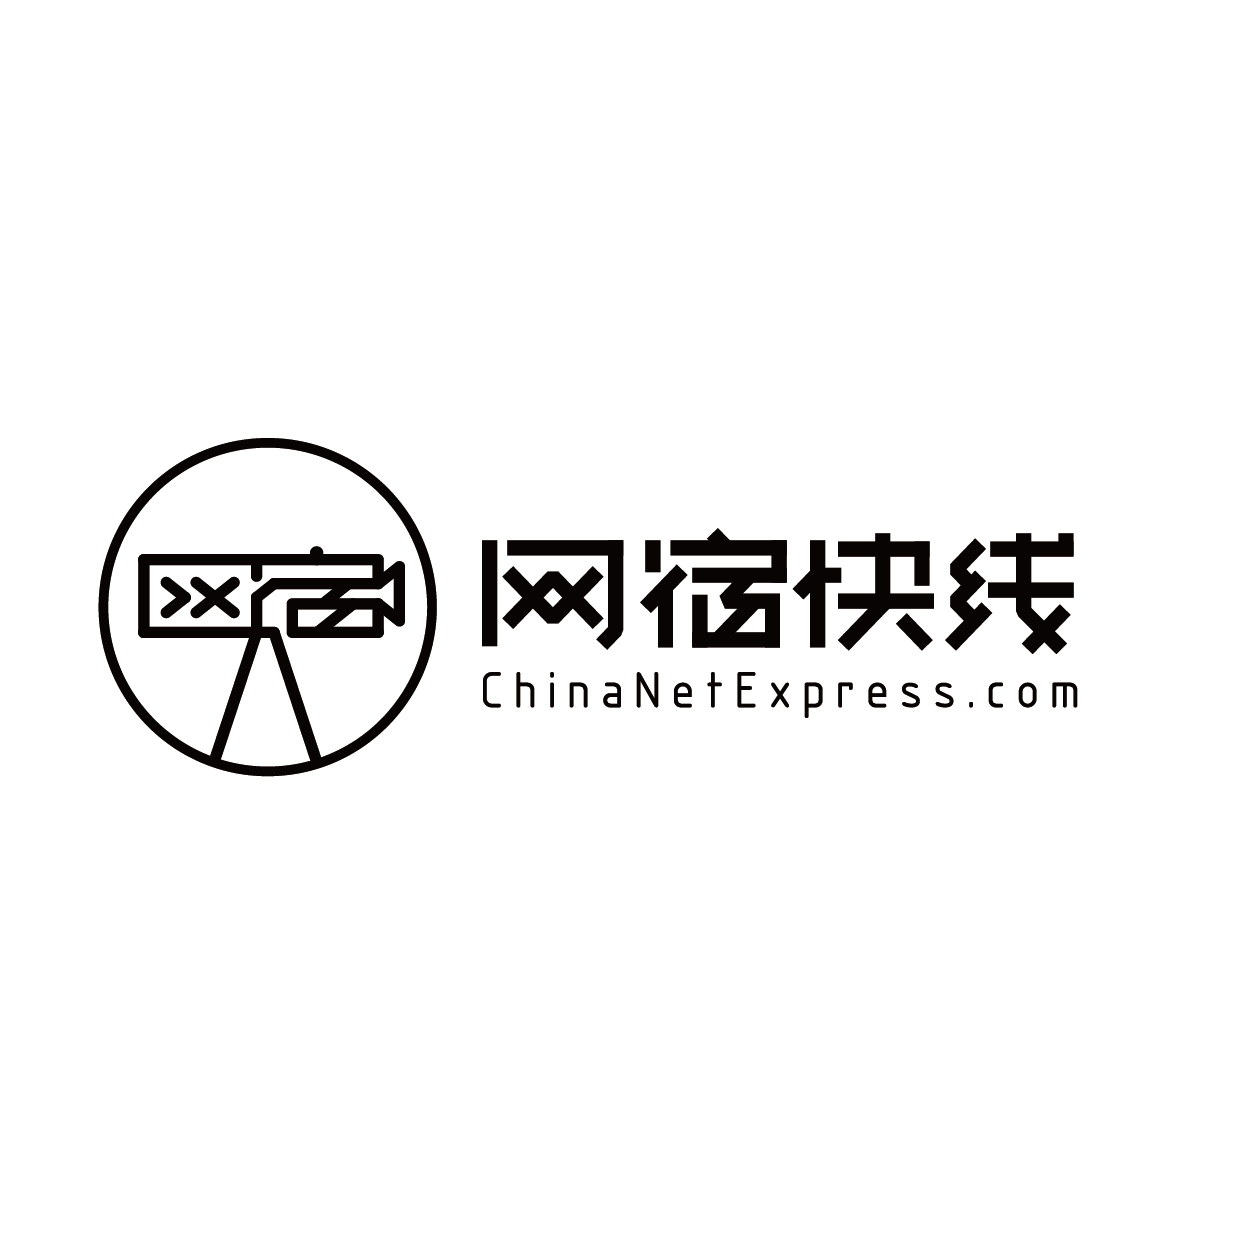 北京网宿快线科技有限公司哈尔滨分公司